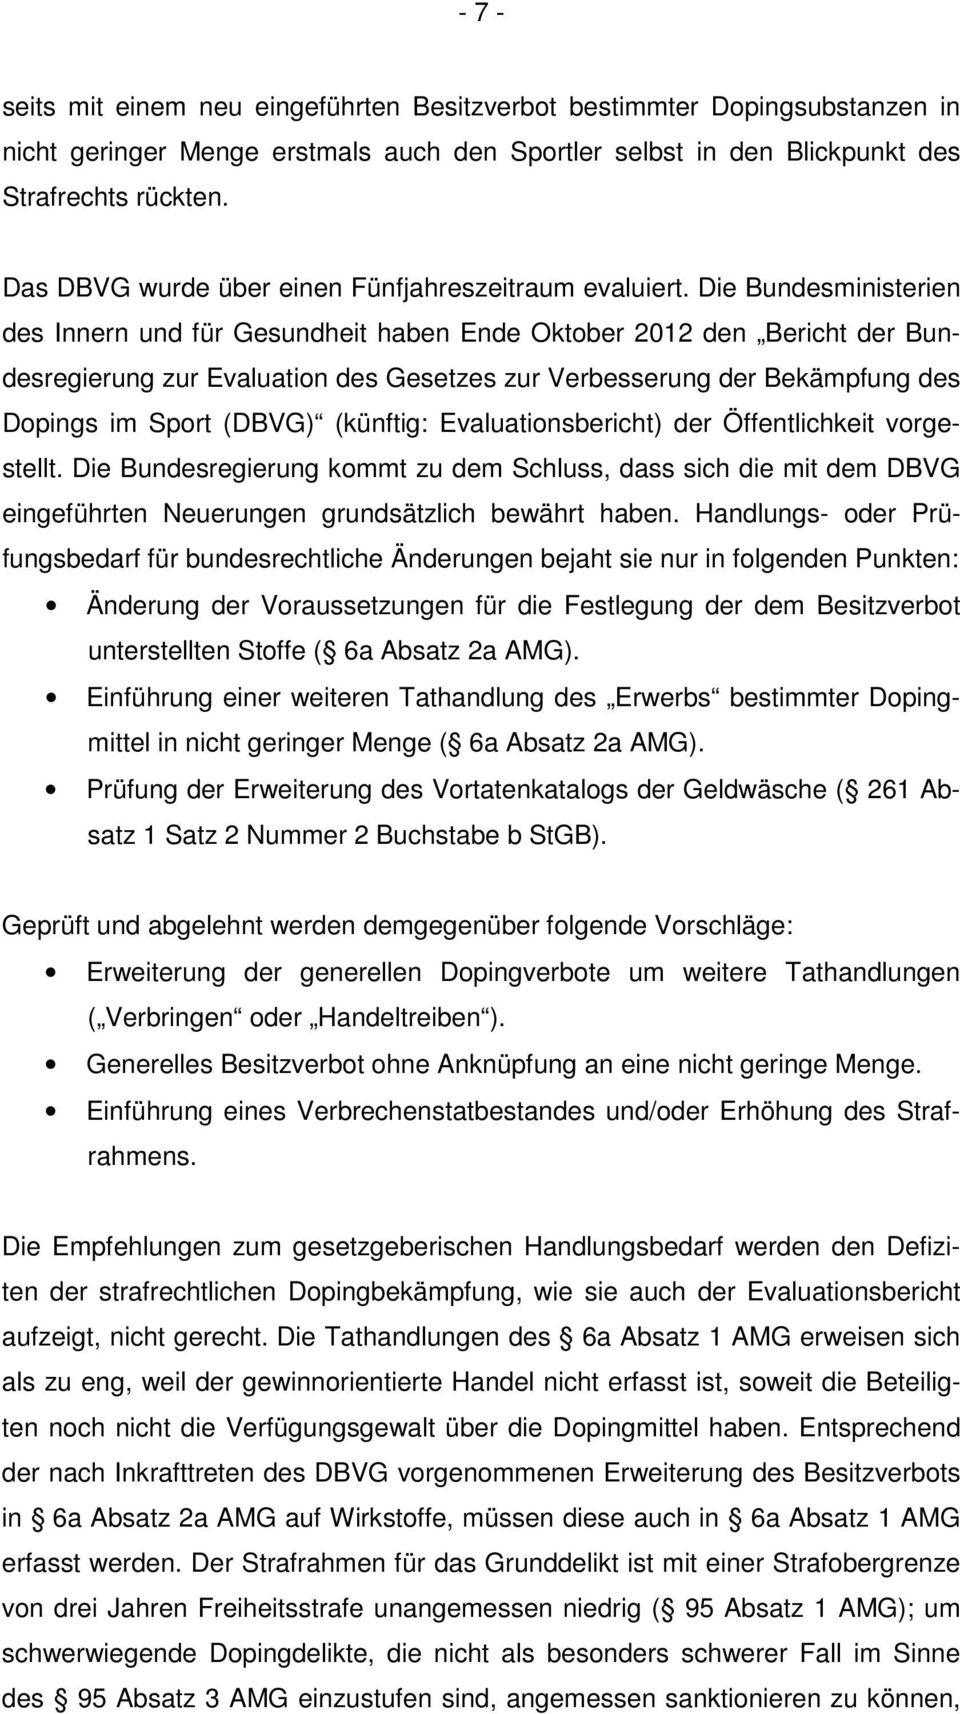 Die Bundesministerien des Innern und für Gesundheit haben Ende Oktober 2012 den Bericht der Bundesregierung zur Evaluation des Gesetzes zur Verbesserung der Bekämpfung des Dopings im Sport (DBVG)